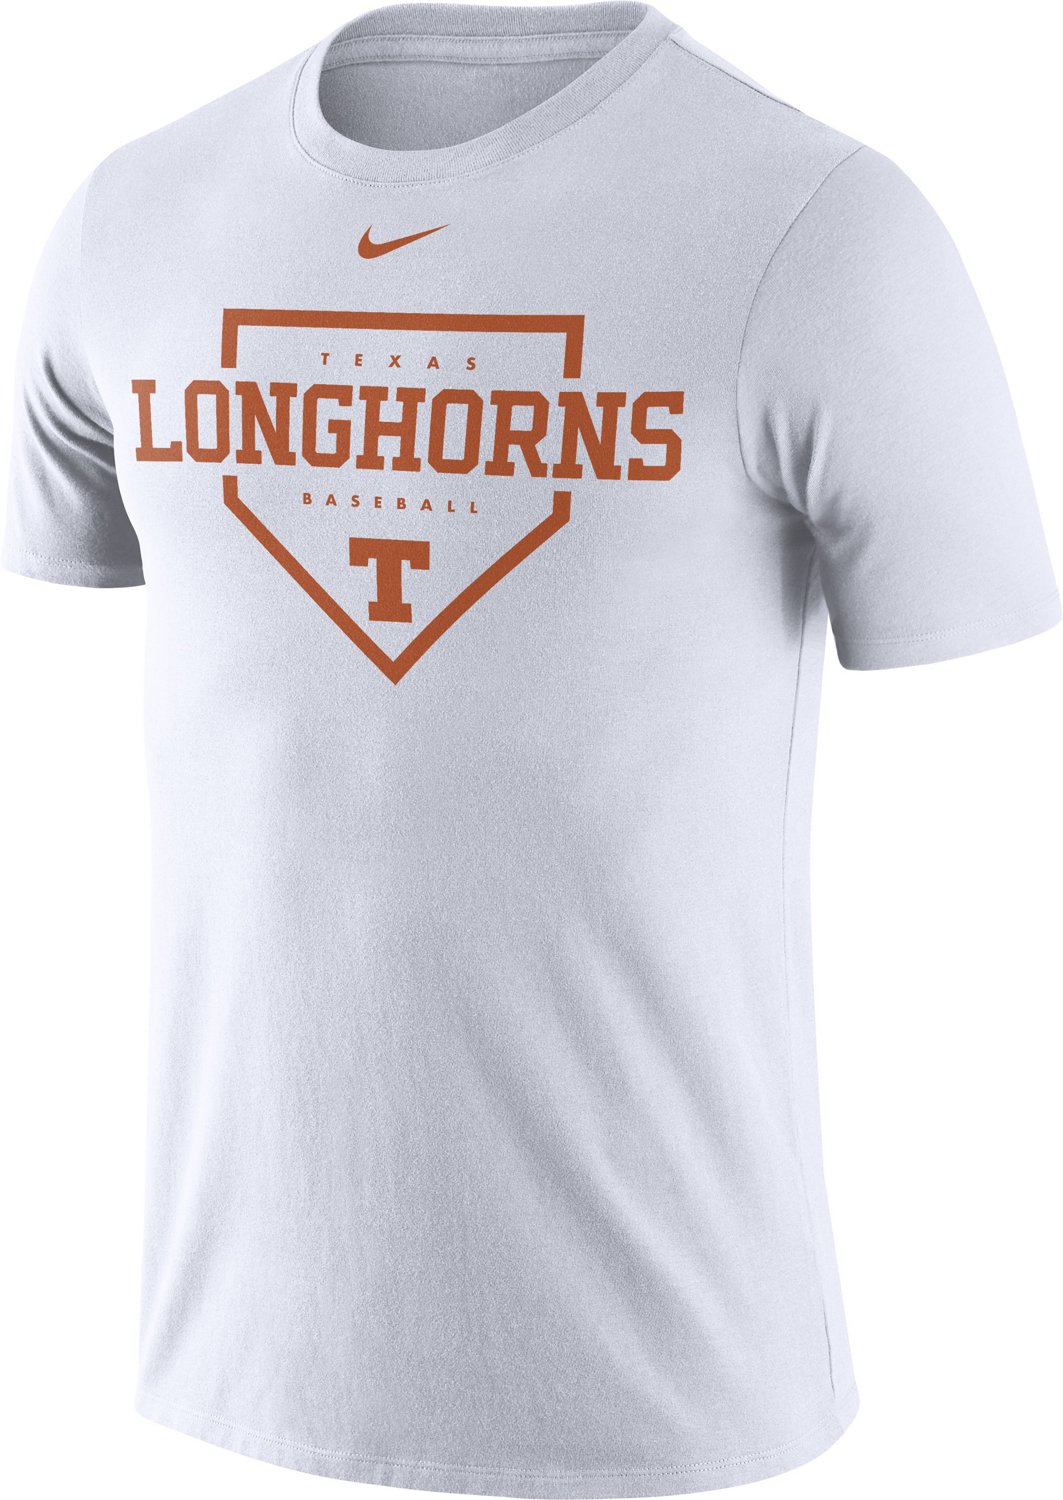 Baseball Shirt Designs - Baseball Team T-Shirt Design - Plate